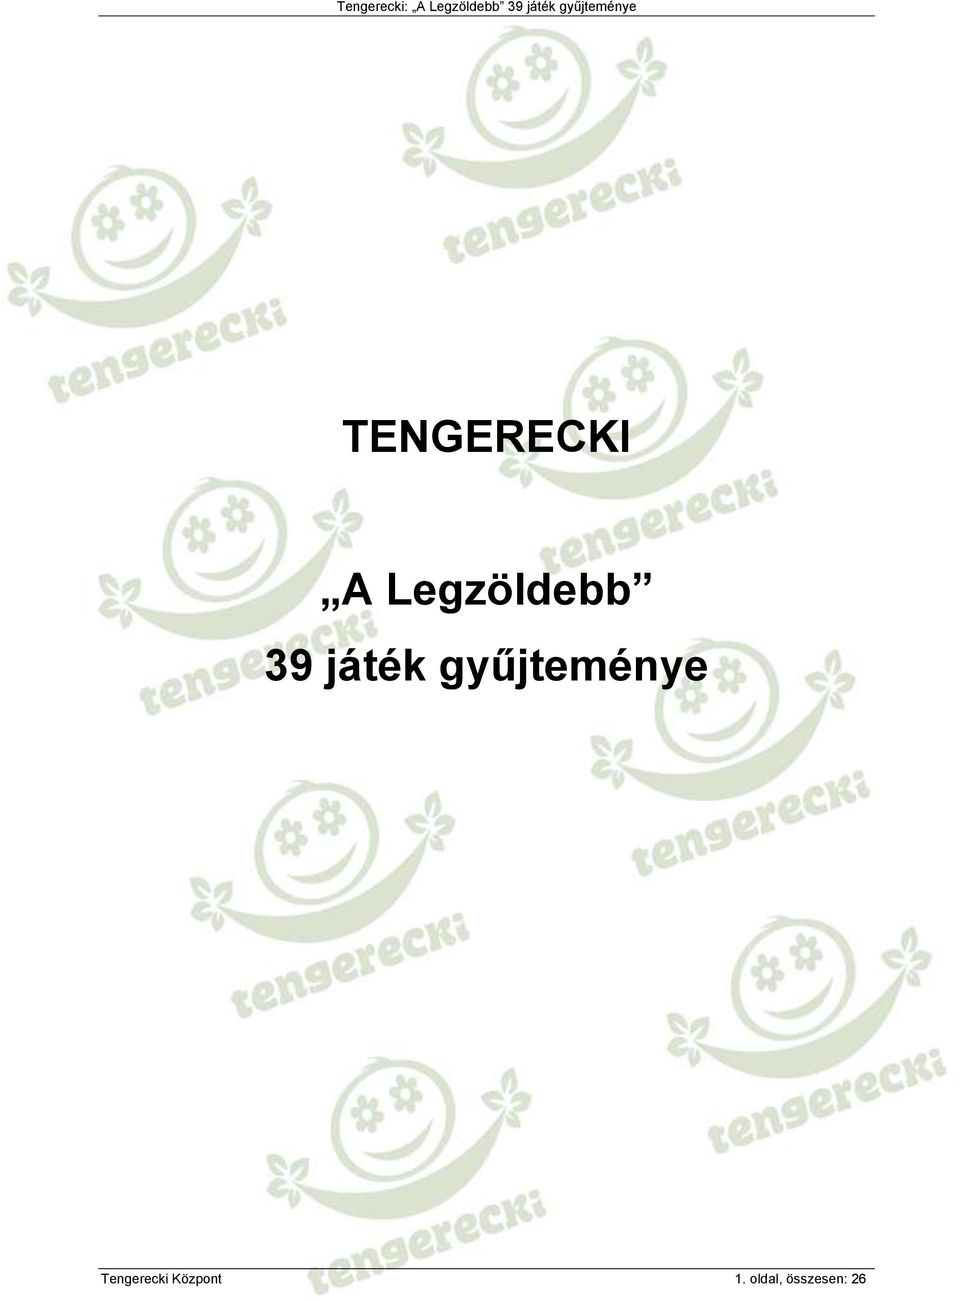 TENGERECKI. A Legzöldebb 39 játék gyűjteménye - PDF Ingyenes letöltés